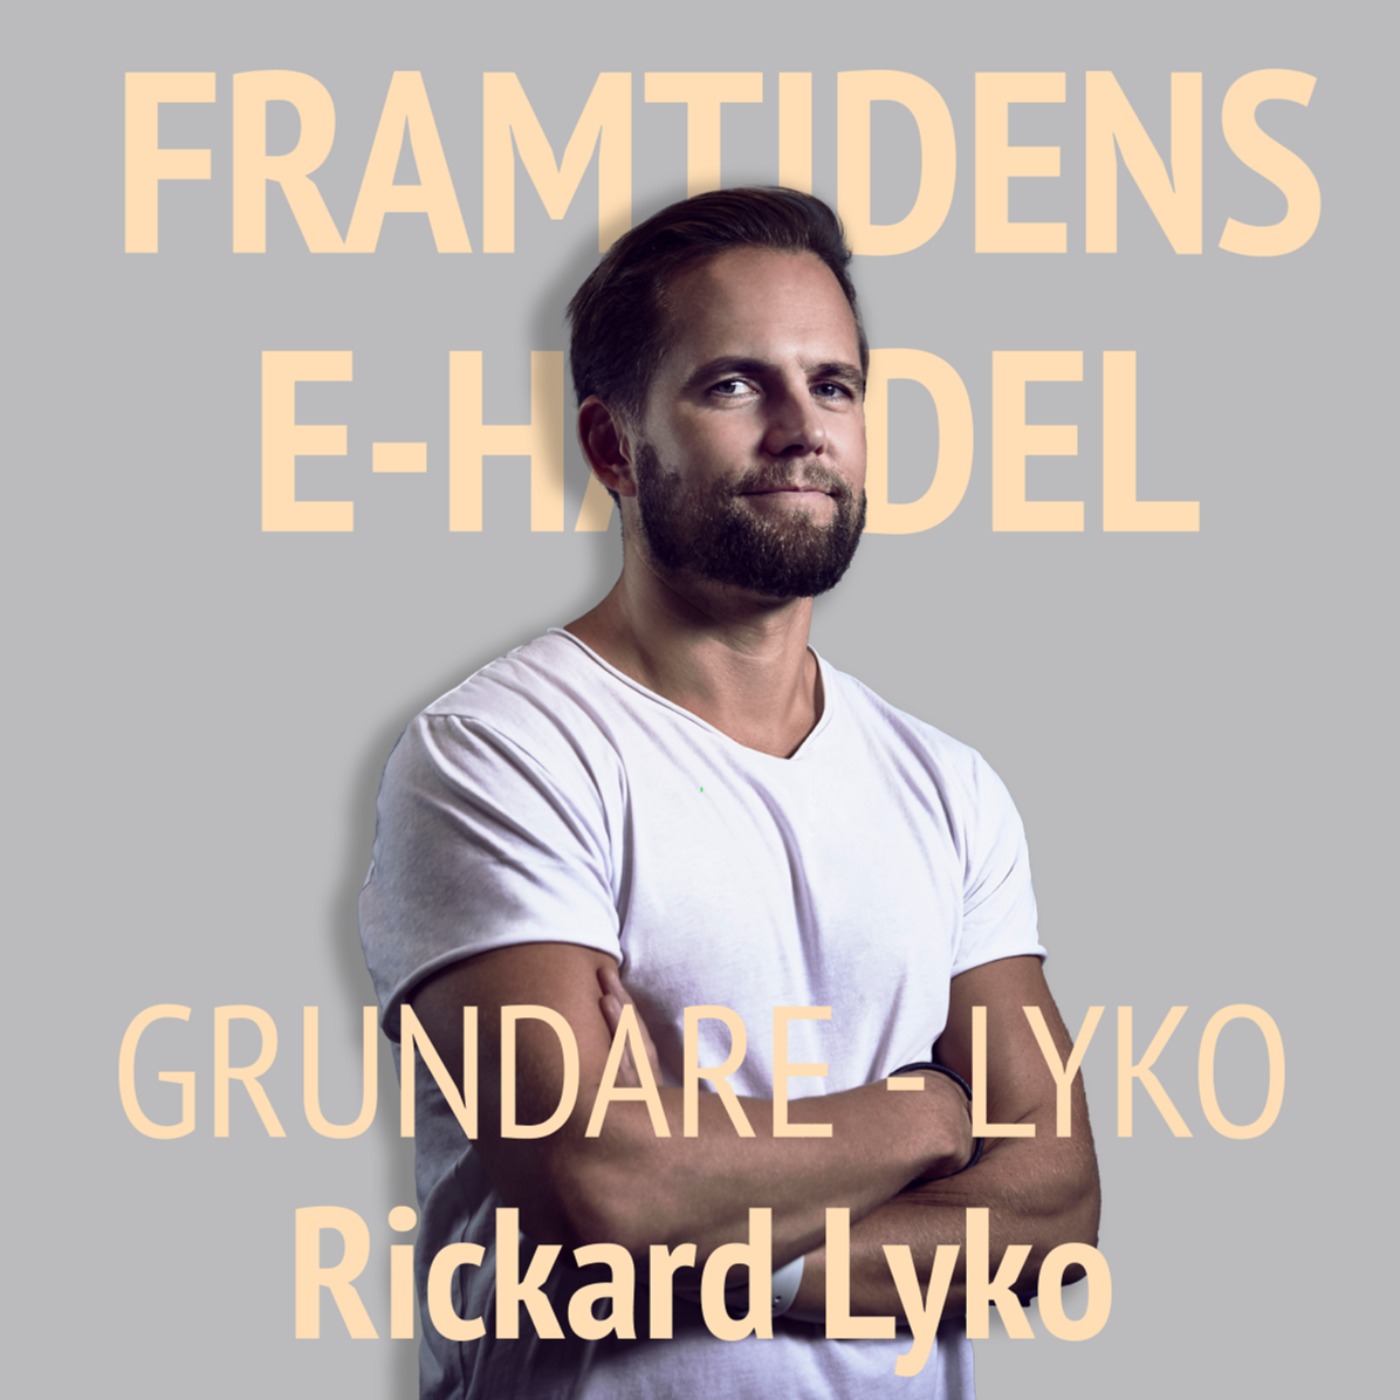 64. Rickard Lyko - Grundare Lyko: Att skala från 0 till 2 miljarder